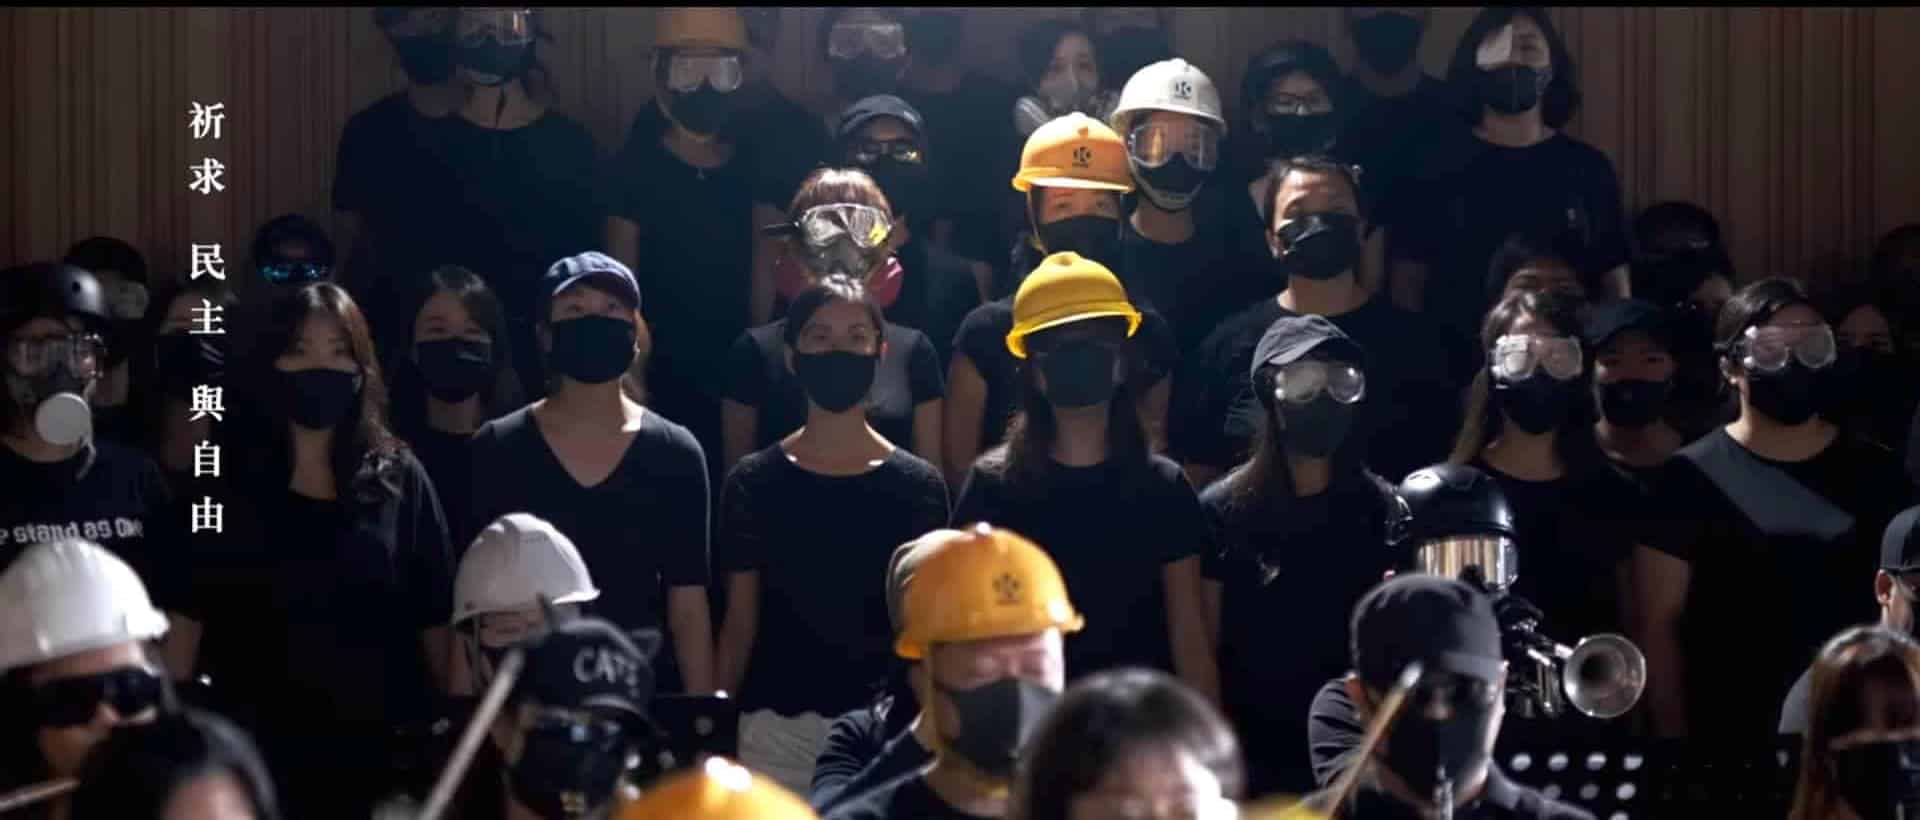 Video bài hát quốc ca mới của Hồng Kông, Vinh quang Hương Cảng